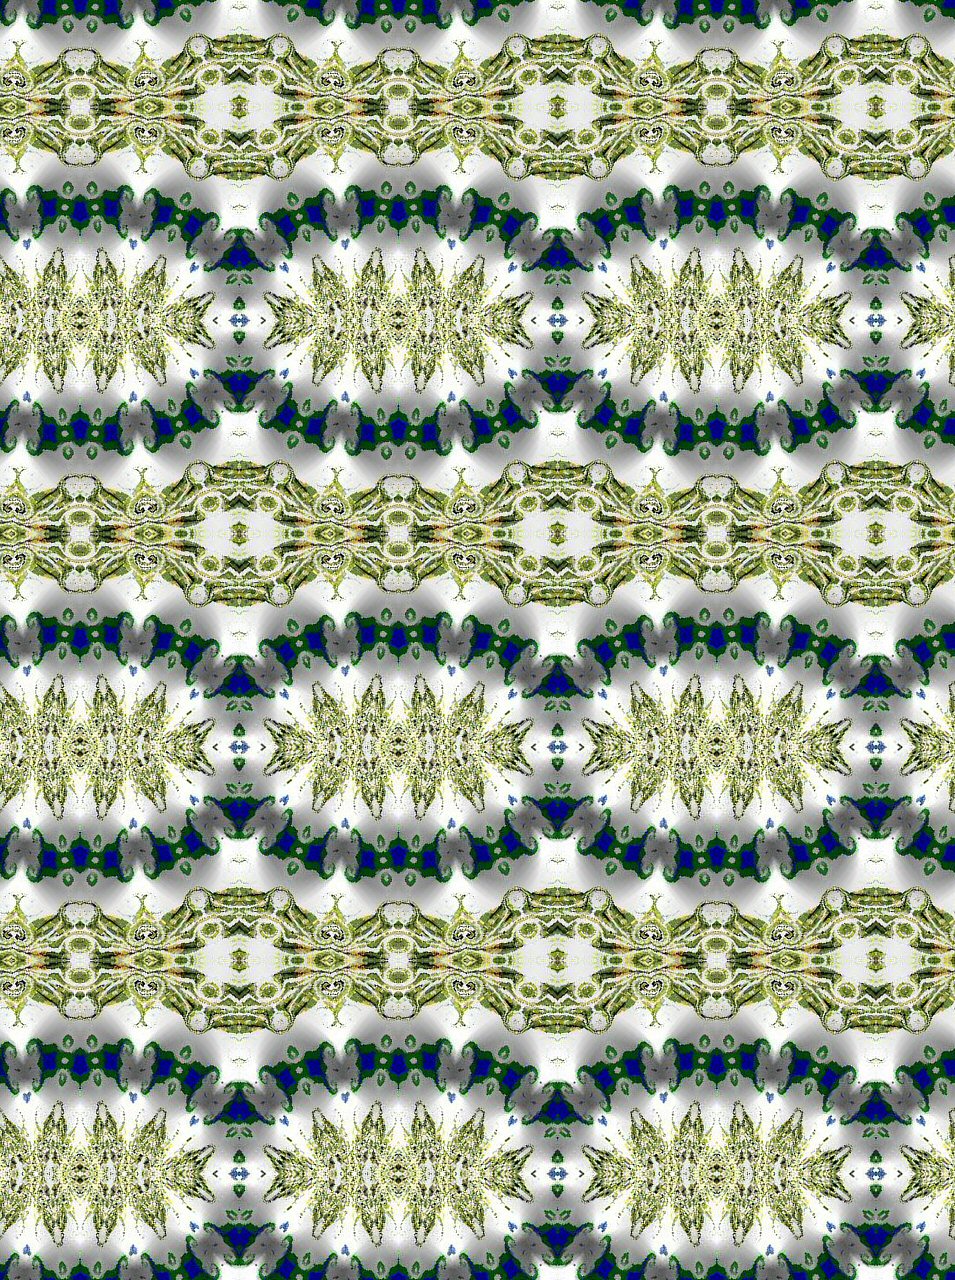 [Blauwe+Bloem+kaleidoscoop+8+rand+patroon.jpg]